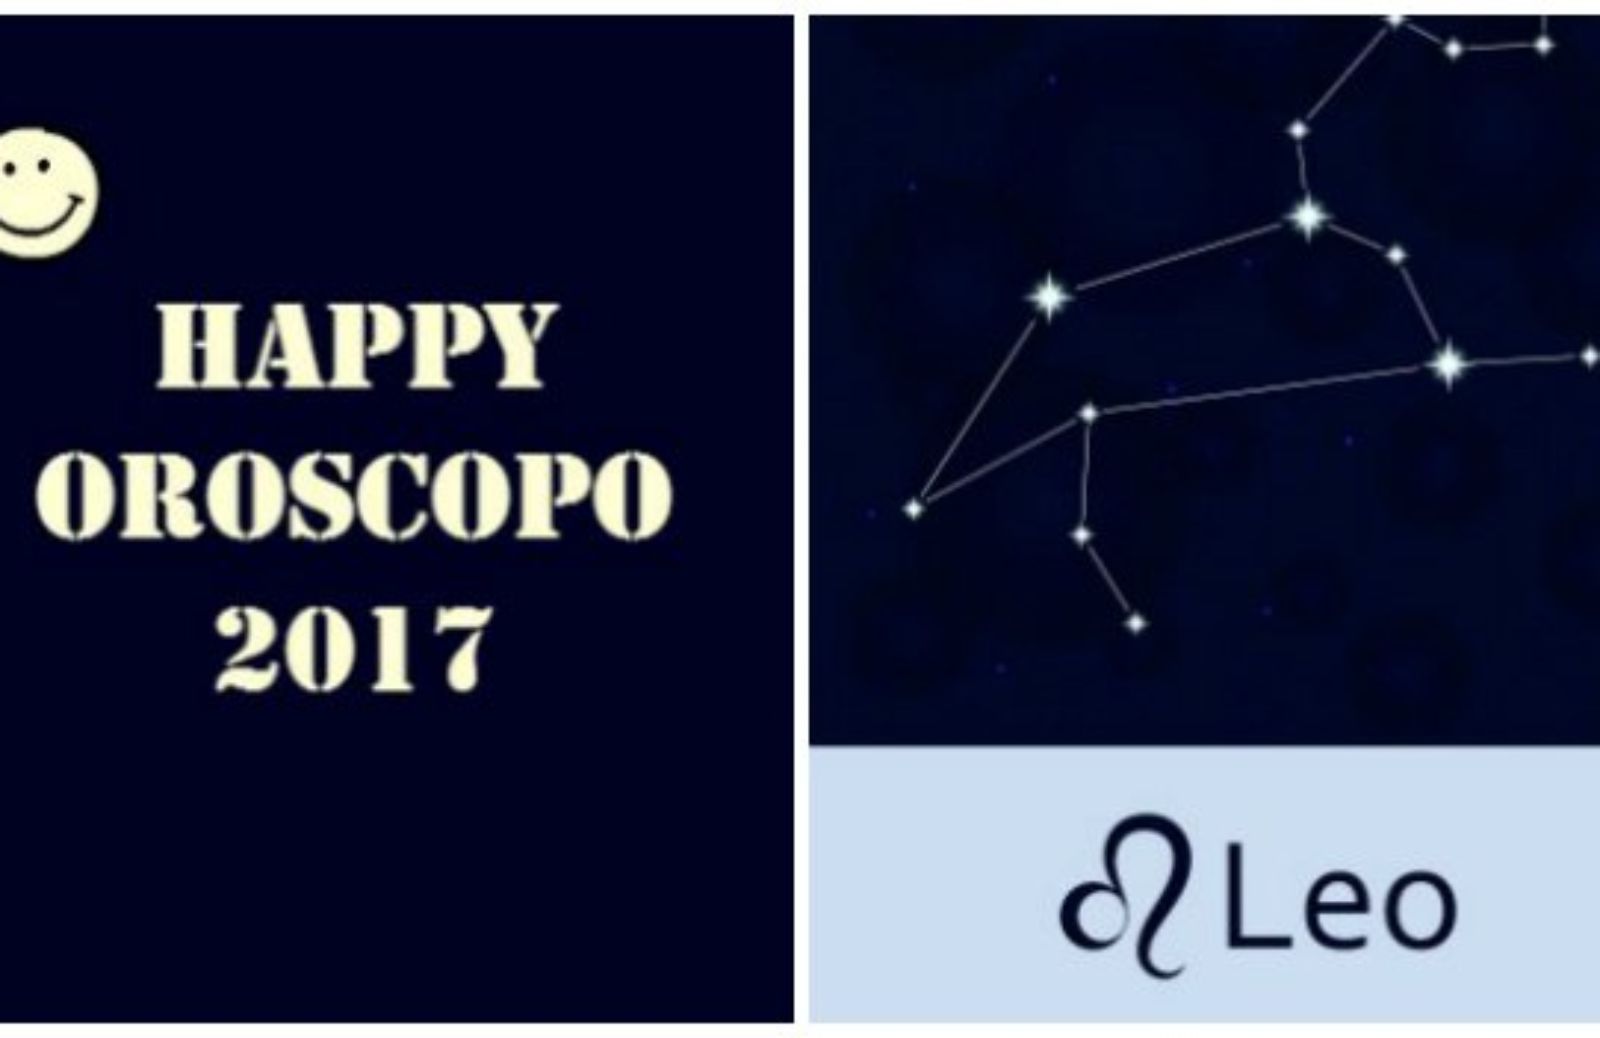 Happy Oroscopo 2017: il segno del Leone